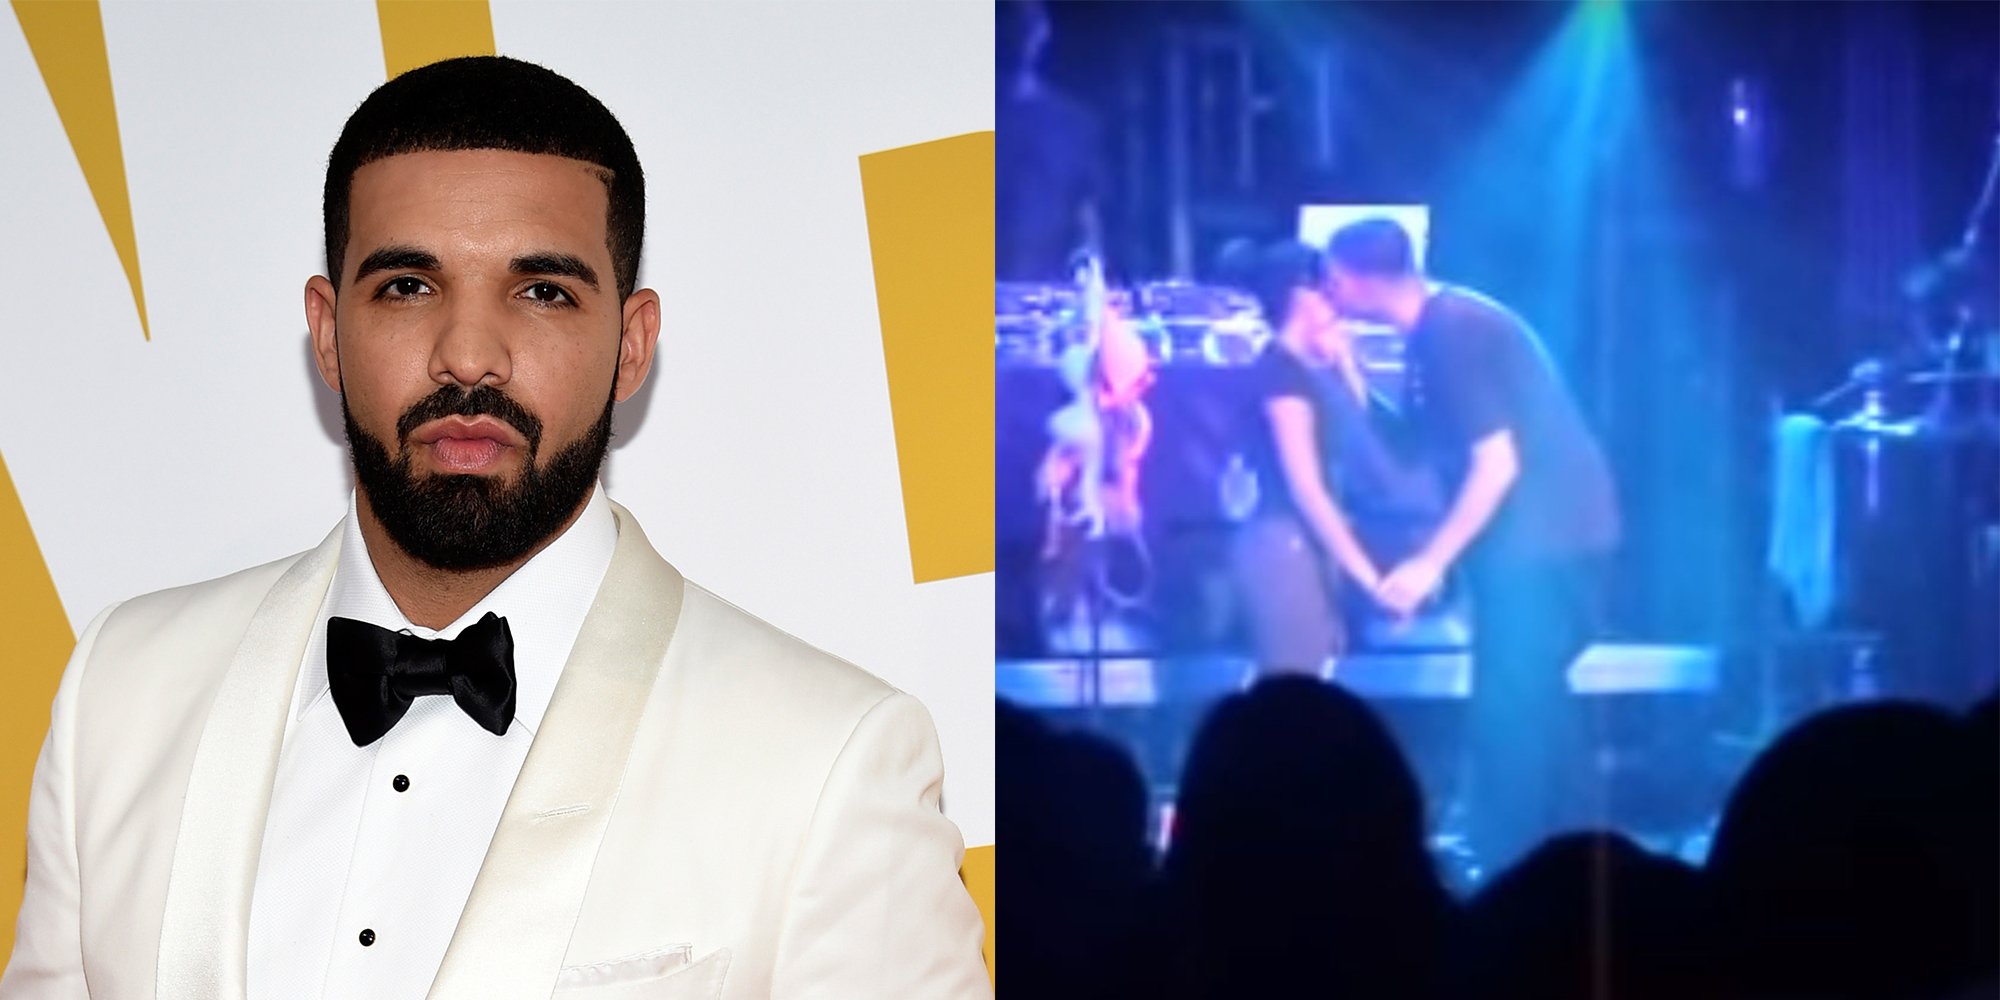 VIDEO: Drake a sărutat o minoră în timpul unui concert: Nu vreau să merg la închisoare